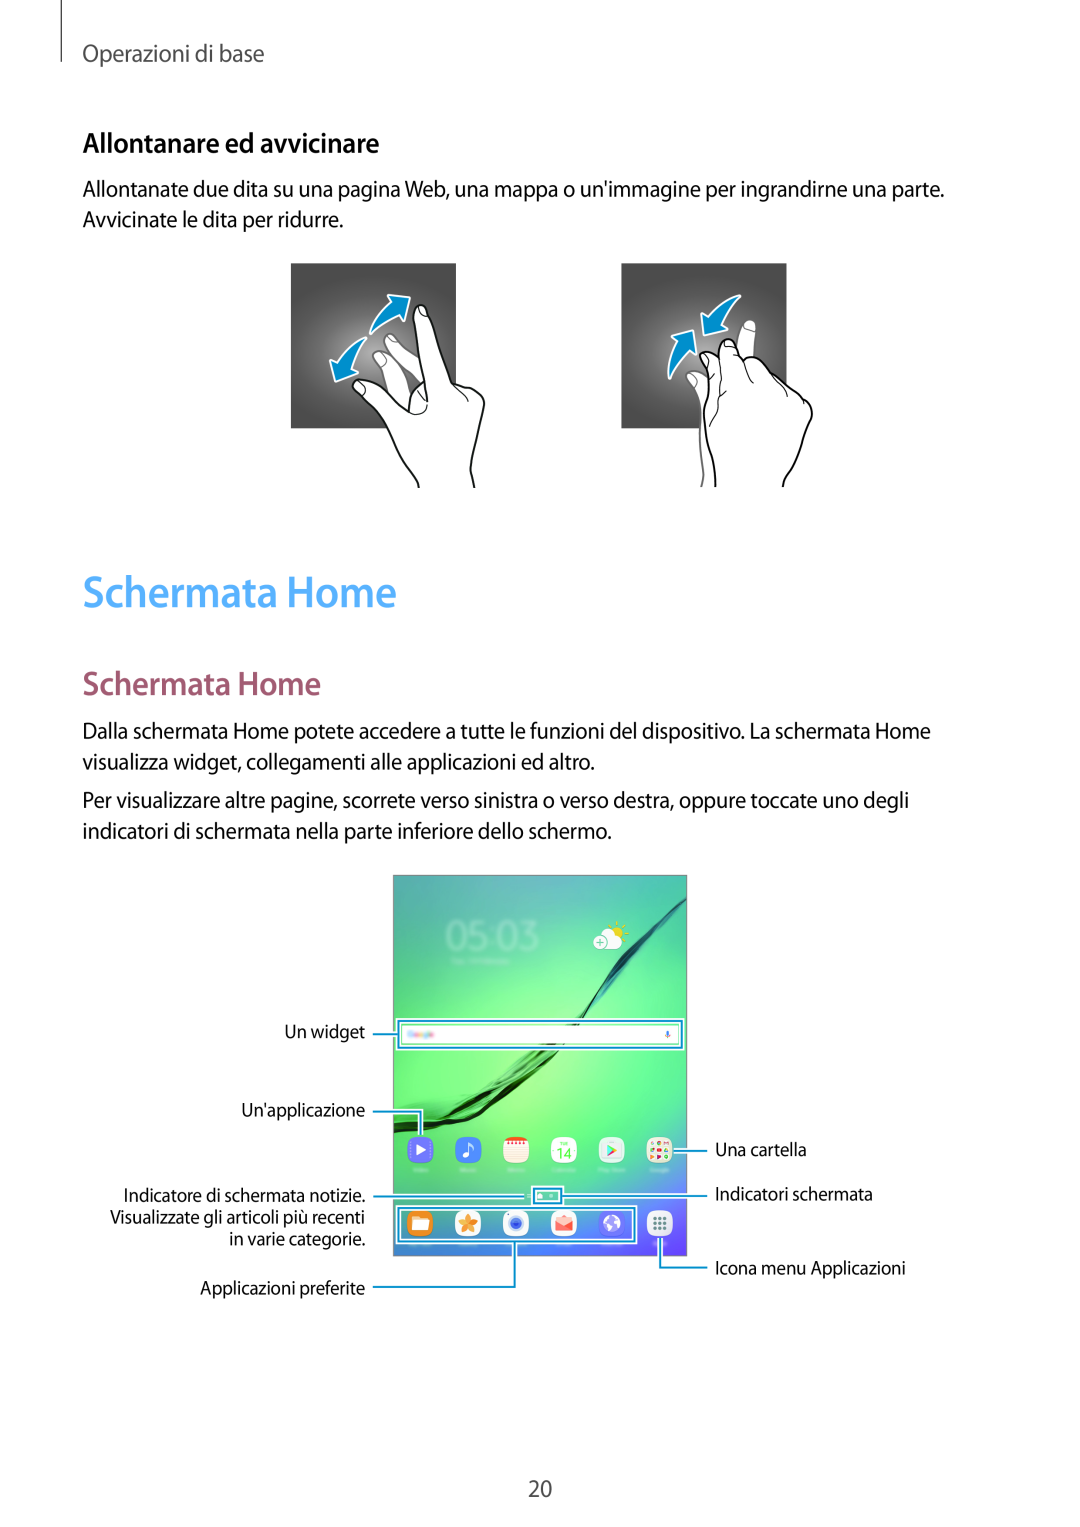 Samsung SM-T810NZWEPHN, SM-T810NZKEPHN, SM-T810NZDETUR manual Schermata Home, Allontanare ed avvicinare, Operazioni di base 